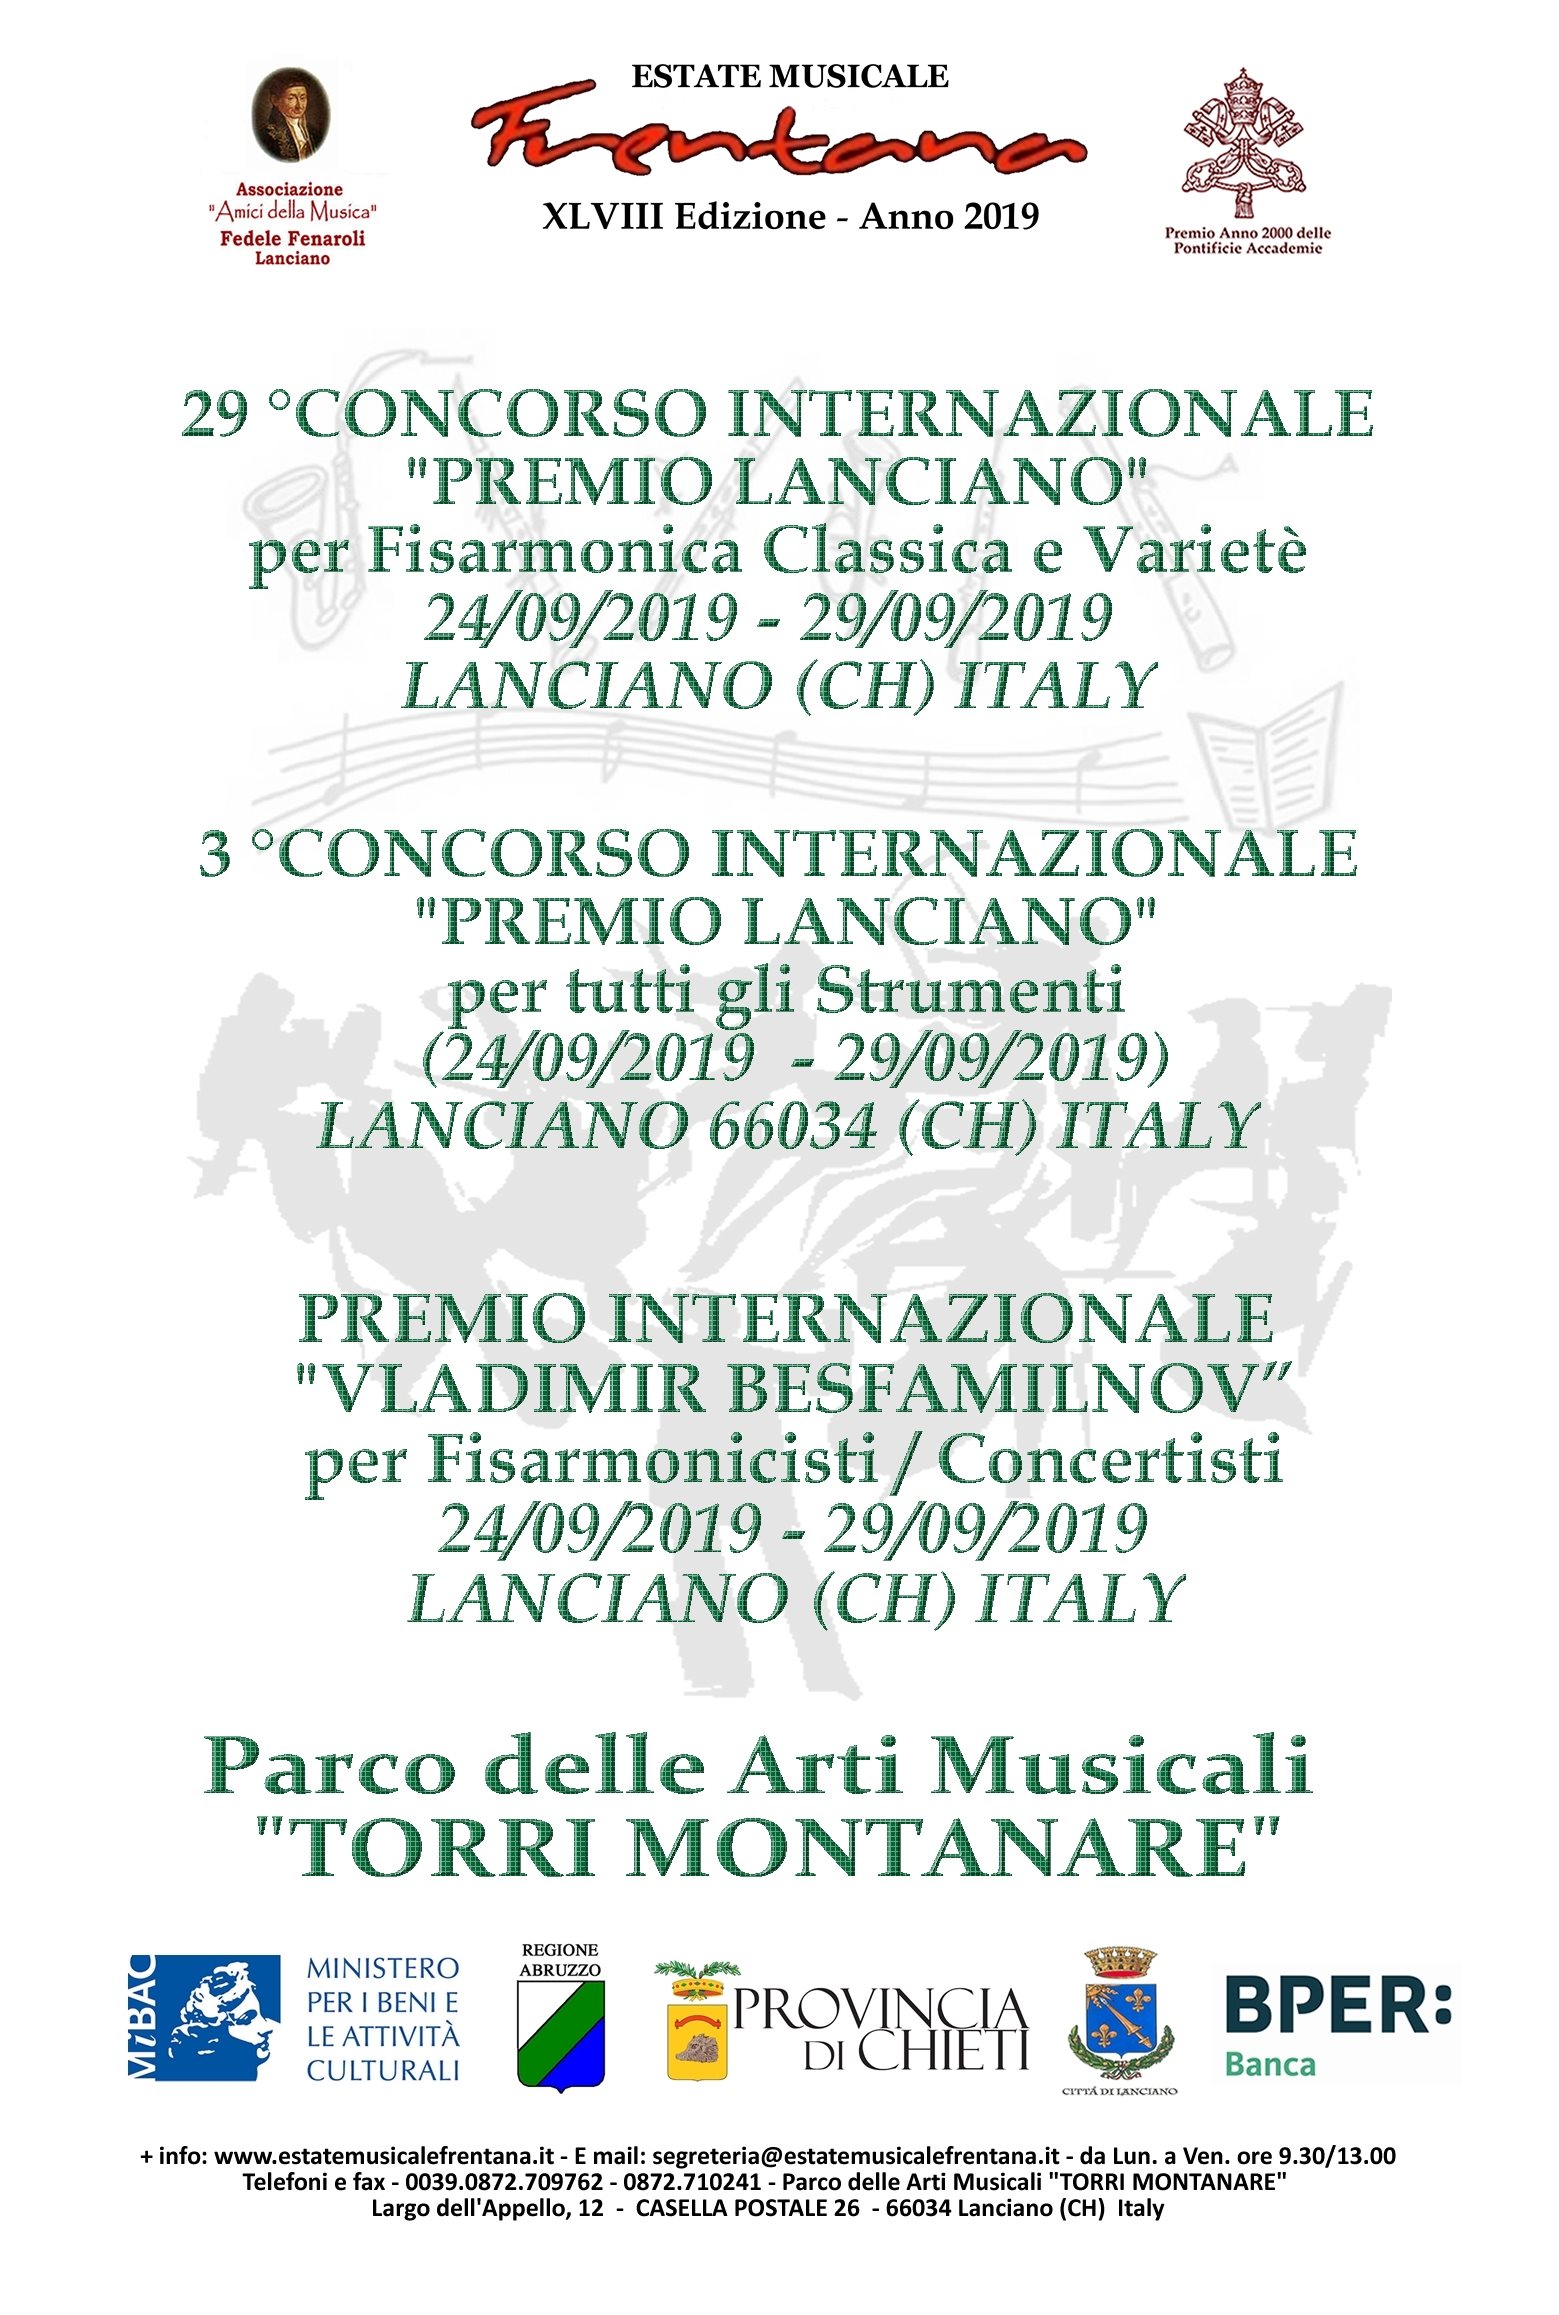 IL 29 °CONCORSO INTERNAZIONALE "PREMIO LANCIANO" PER FISARMONICA CLASSICA E VARIETÈ   (24/09/2019  - 29/09/2019) -  LANCIANO 66034 (CH) ITALY